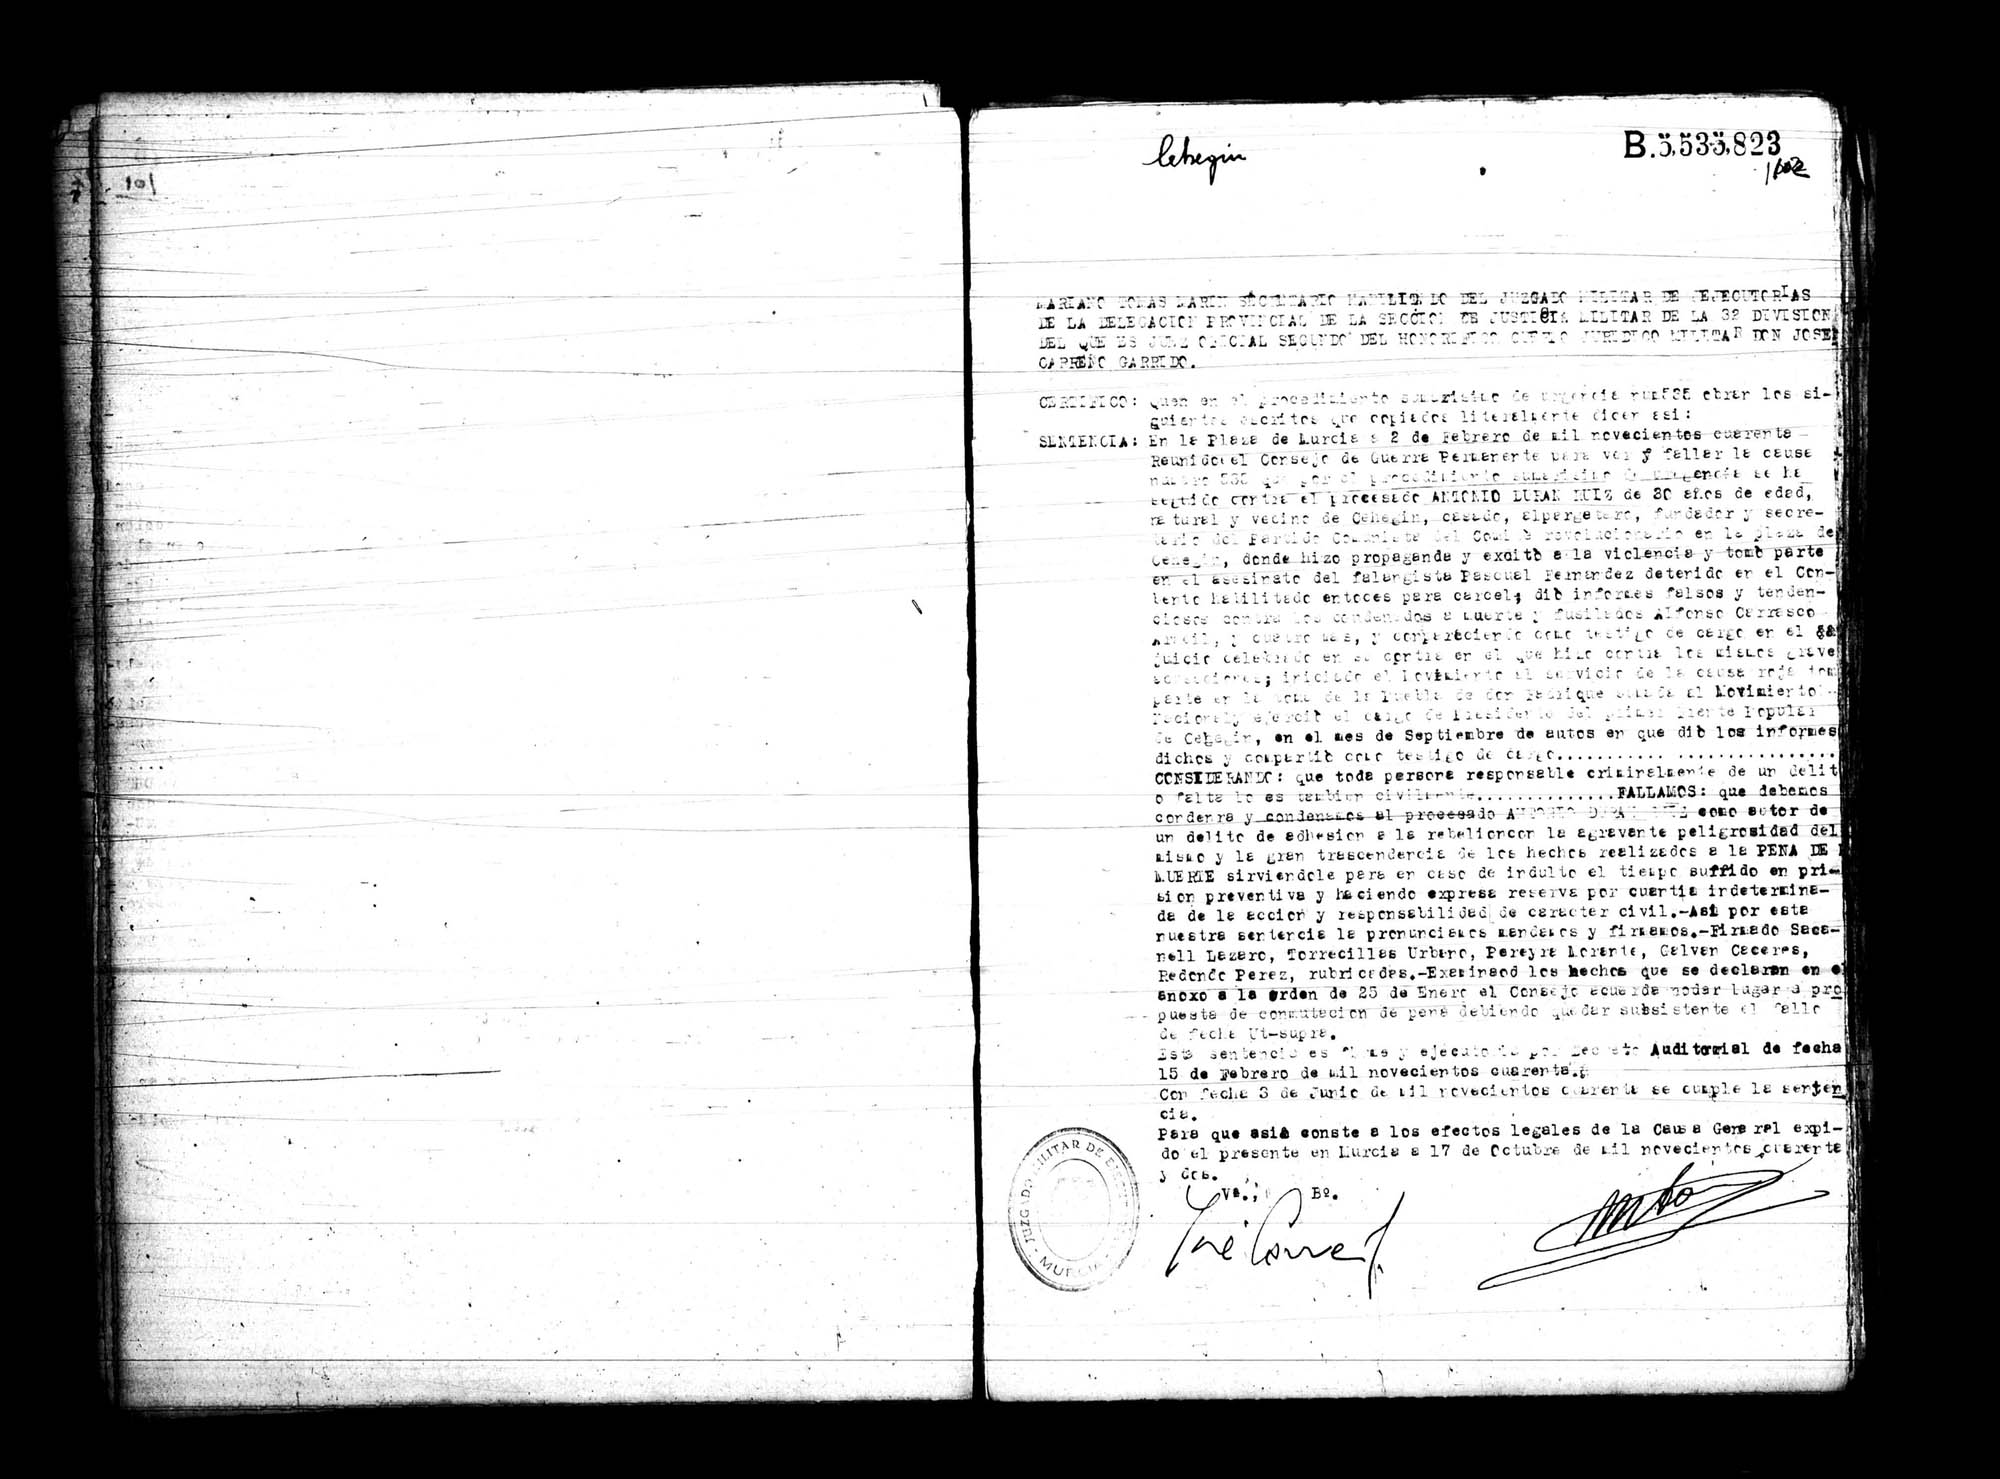 Certificado de la sentencia pronunciada contra Antonio Durán Ruiz, causa 535, el 2 de febrero de 1940 en Murcia.